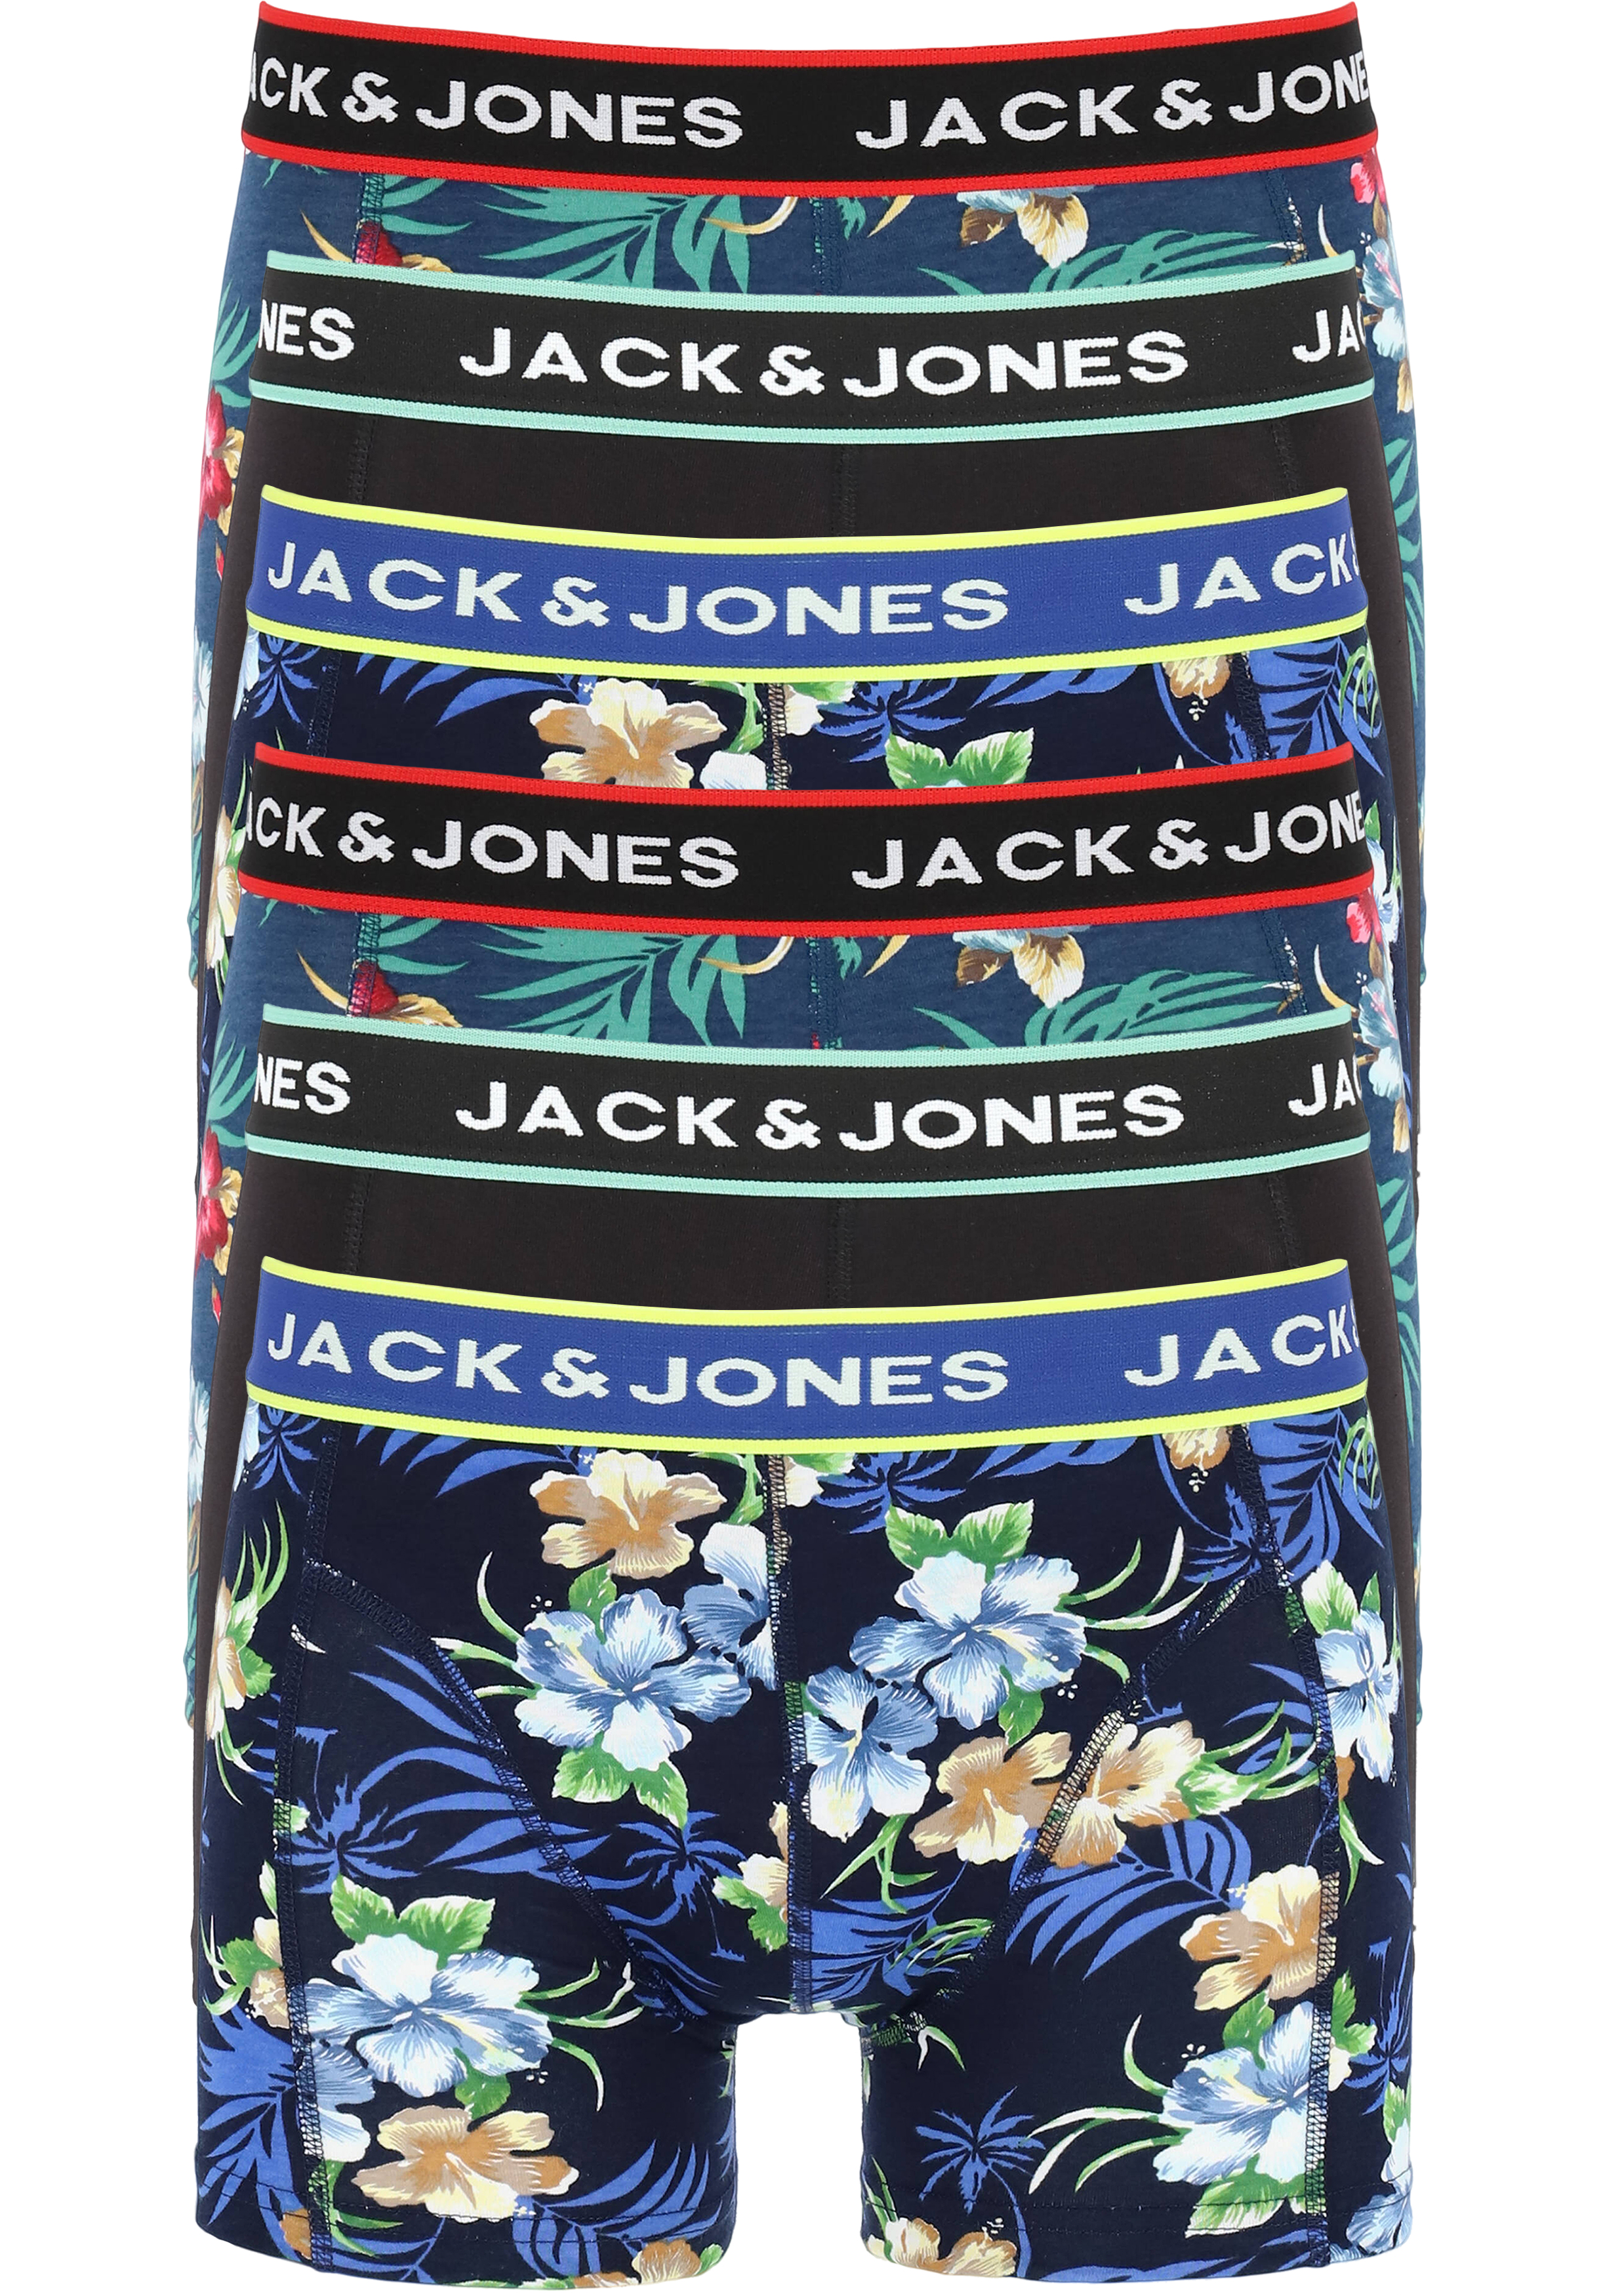 retort Geniet Saai JACK & JONES boxers Jacflower trunks (6-pack), gebloemd en uni - Zomer SALE  tot 50% korting